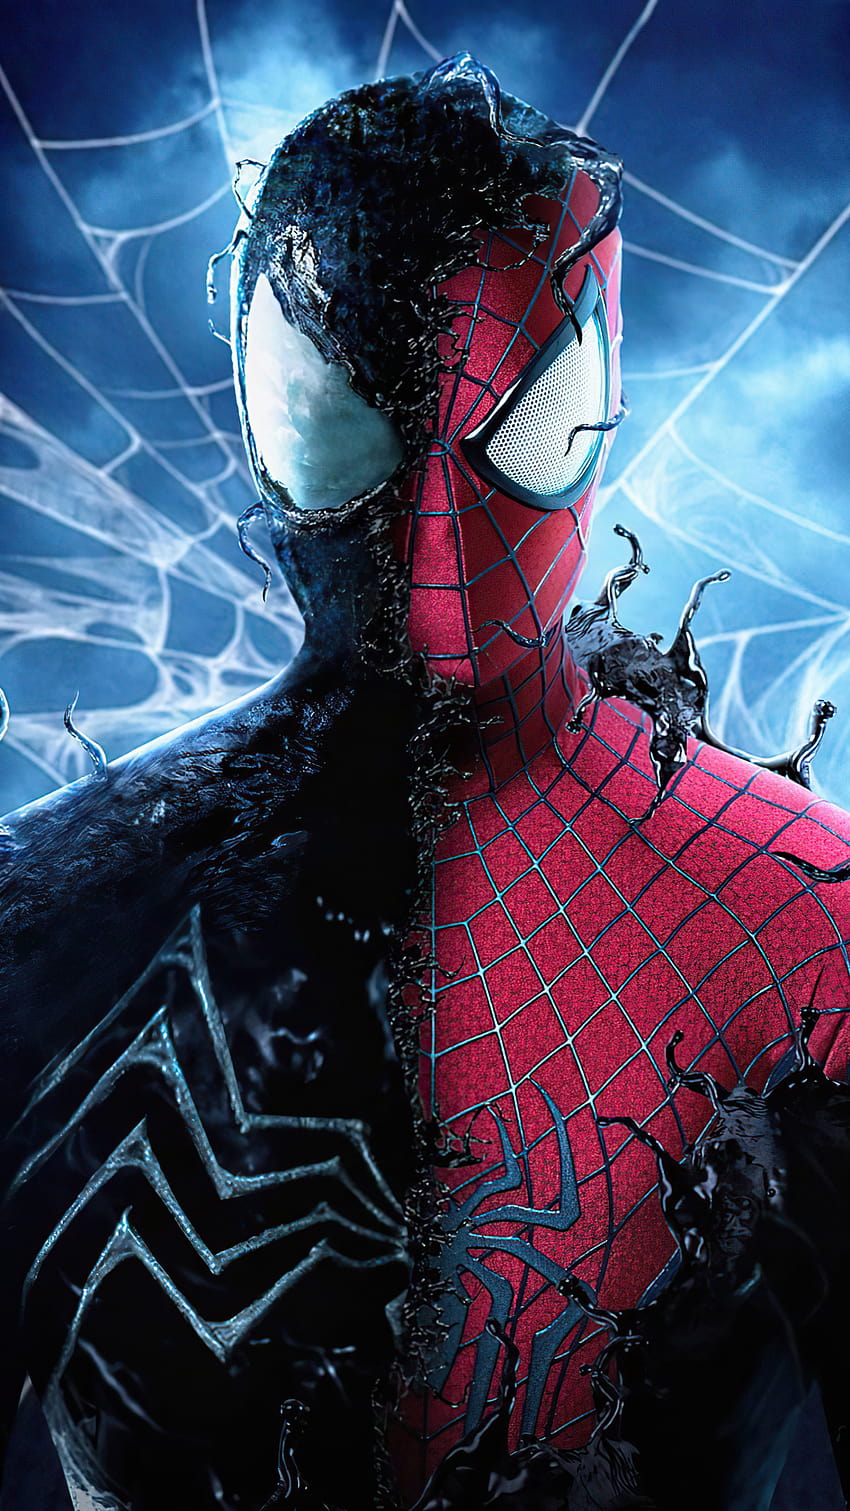 1080x1920 Spider Man With The Symbiote Iphone 7,6s, 6 Plus, Pixel xl, One Plus 3,3t, 5, Sfondi e, tuta simbionte spider man Sfondo del telefono HD